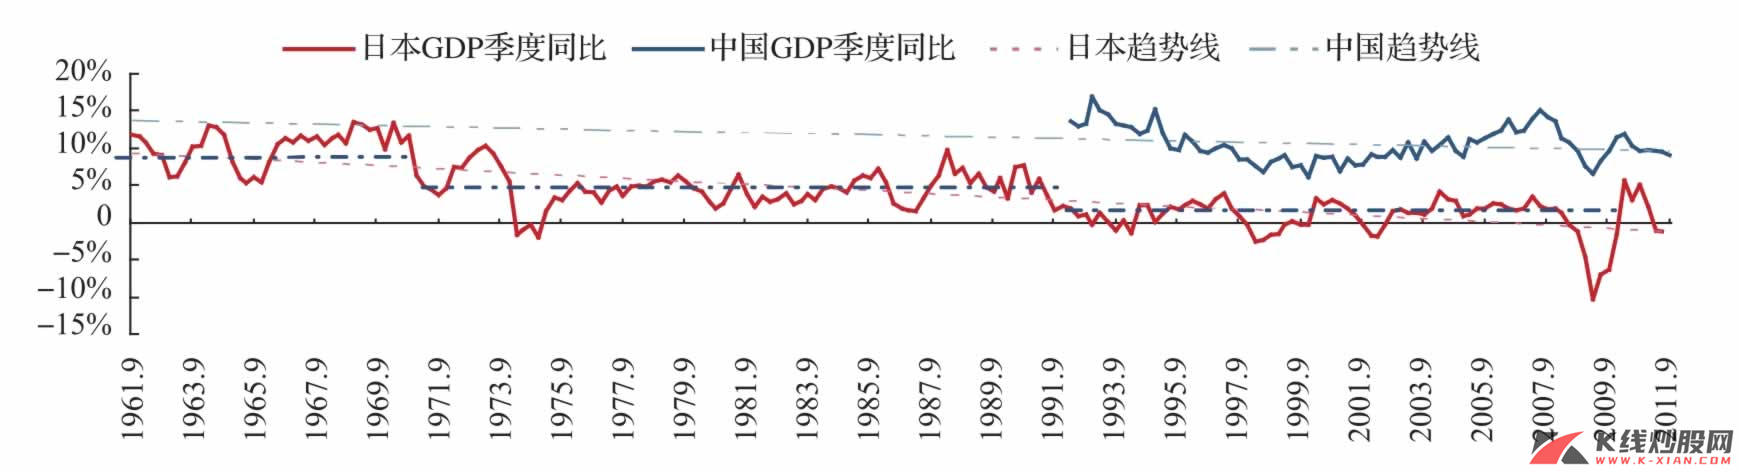 日本经济增长中枢下移的历史图景